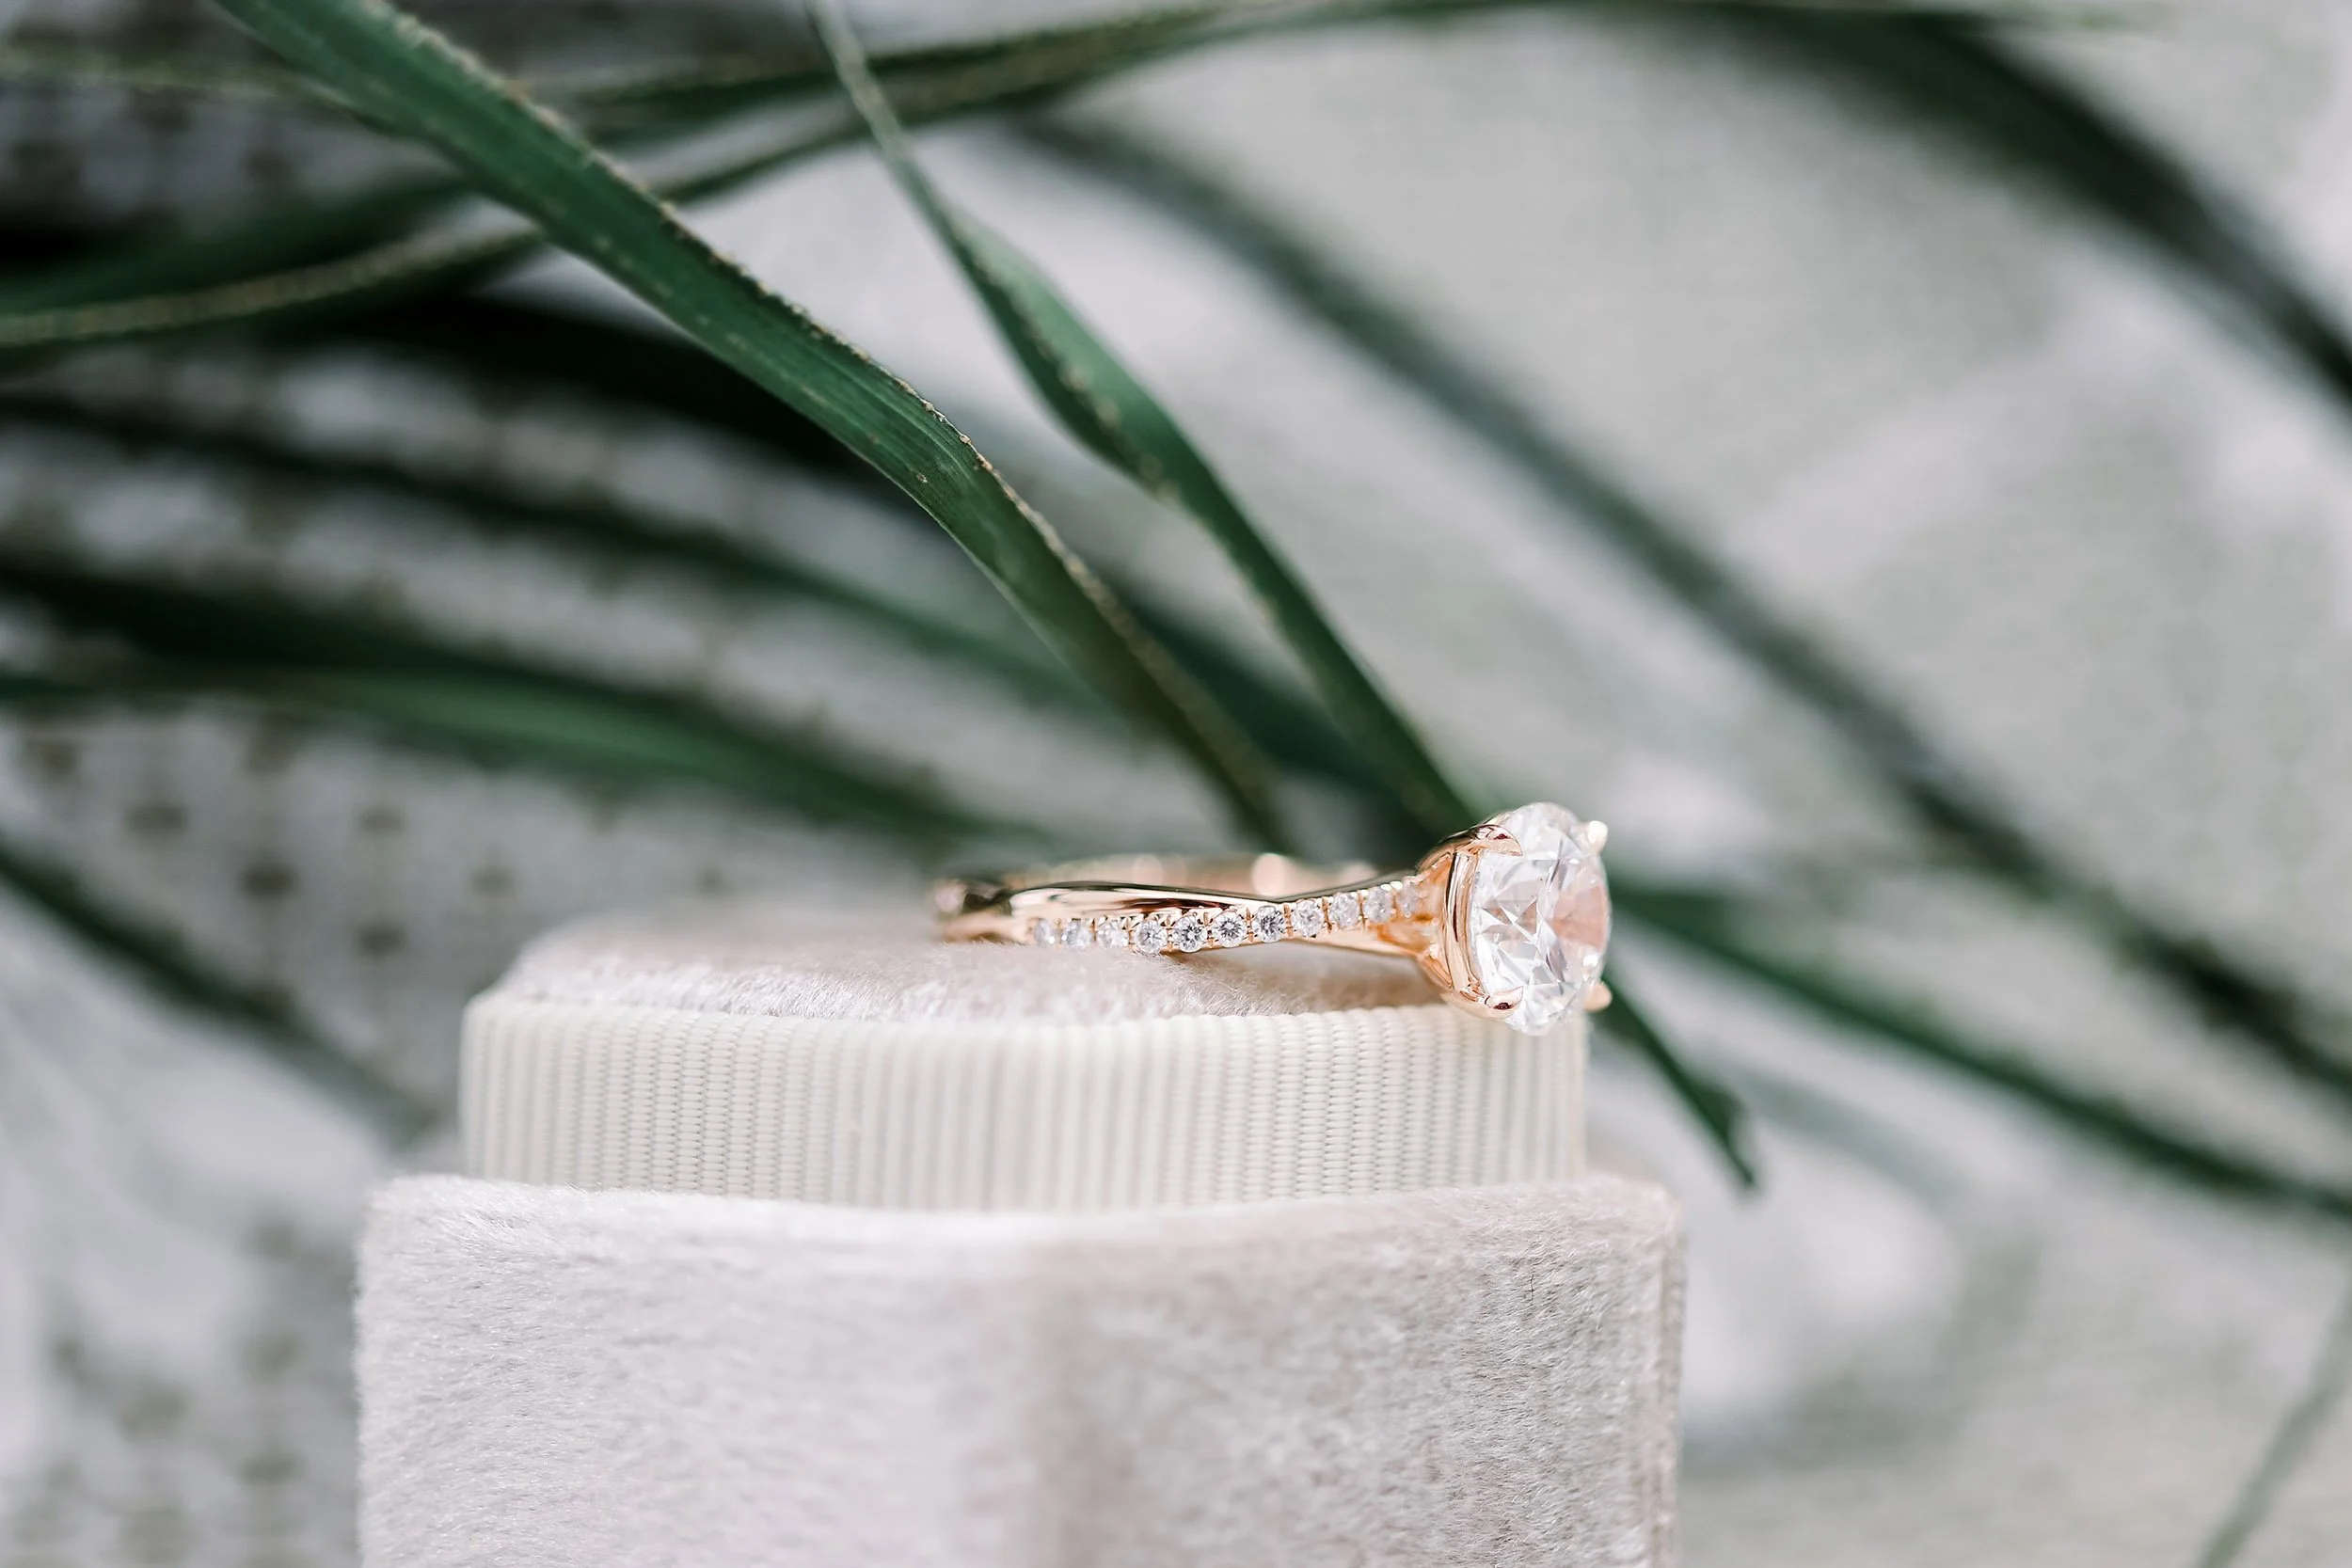 Solitaire Diamond Rings & Engagement Rings | Forevermark